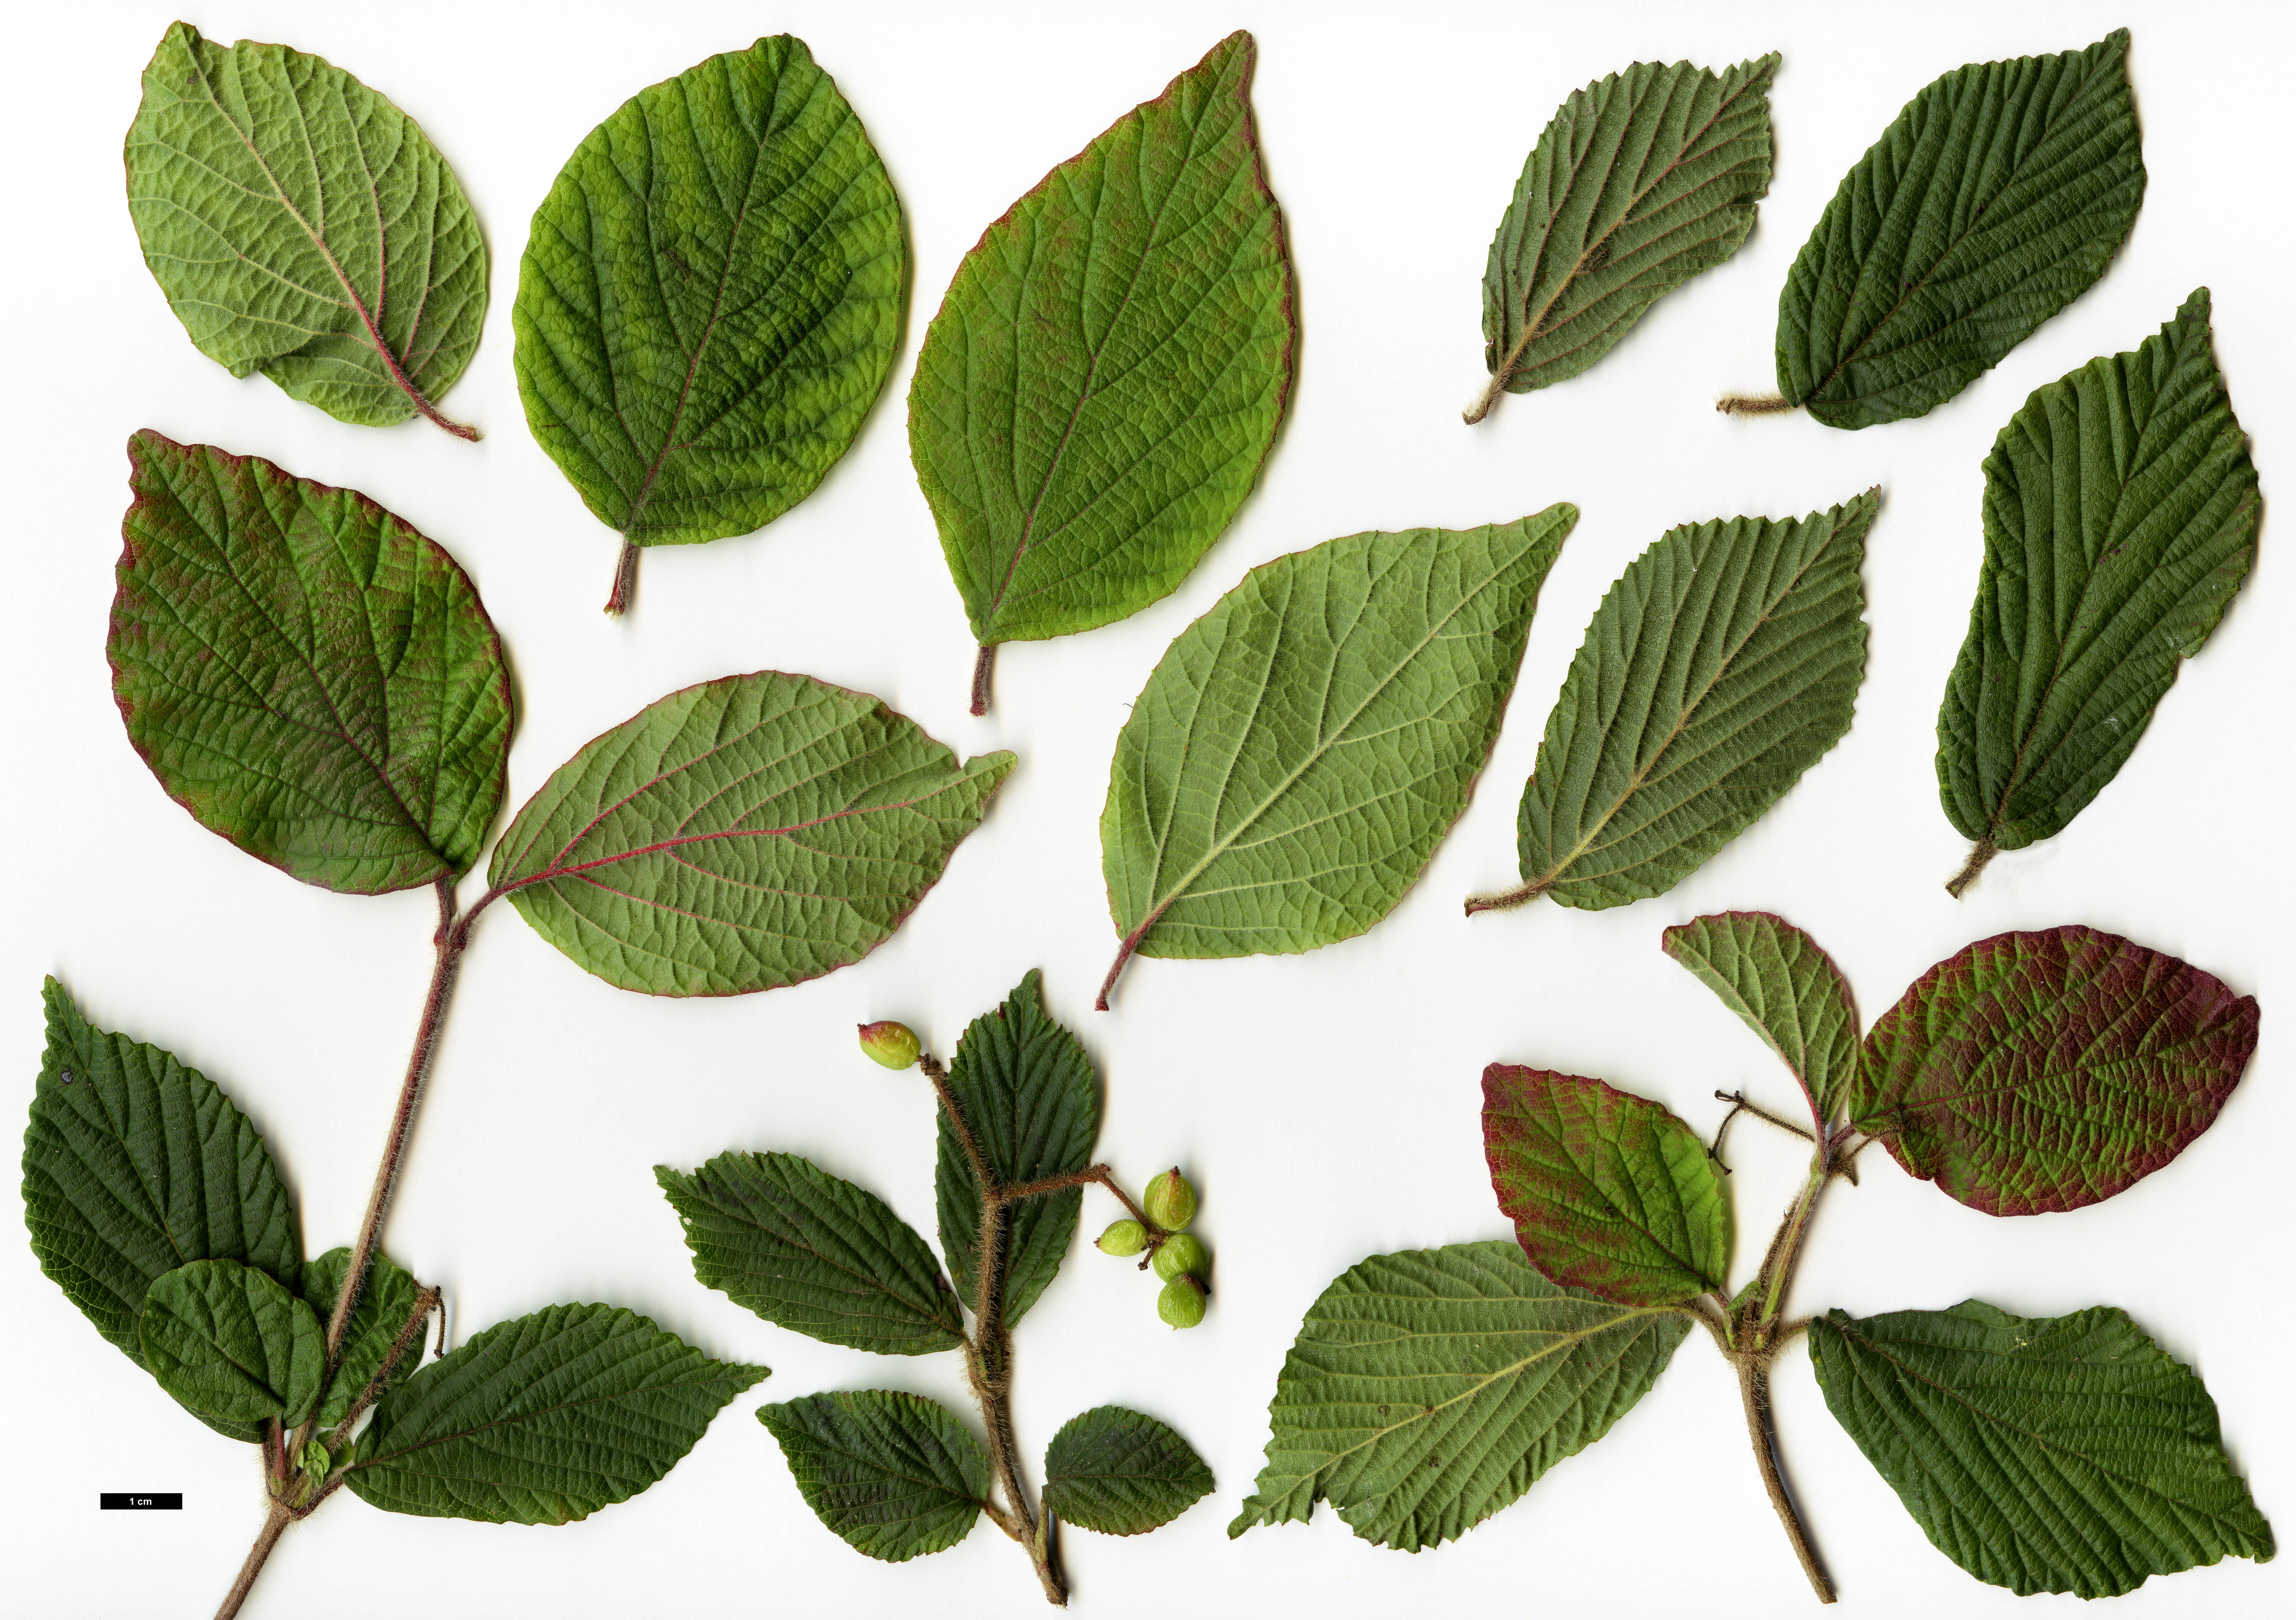 High resolution image: Family: Adoxaceae - Genus: Viburnum - Taxon: corylifolium